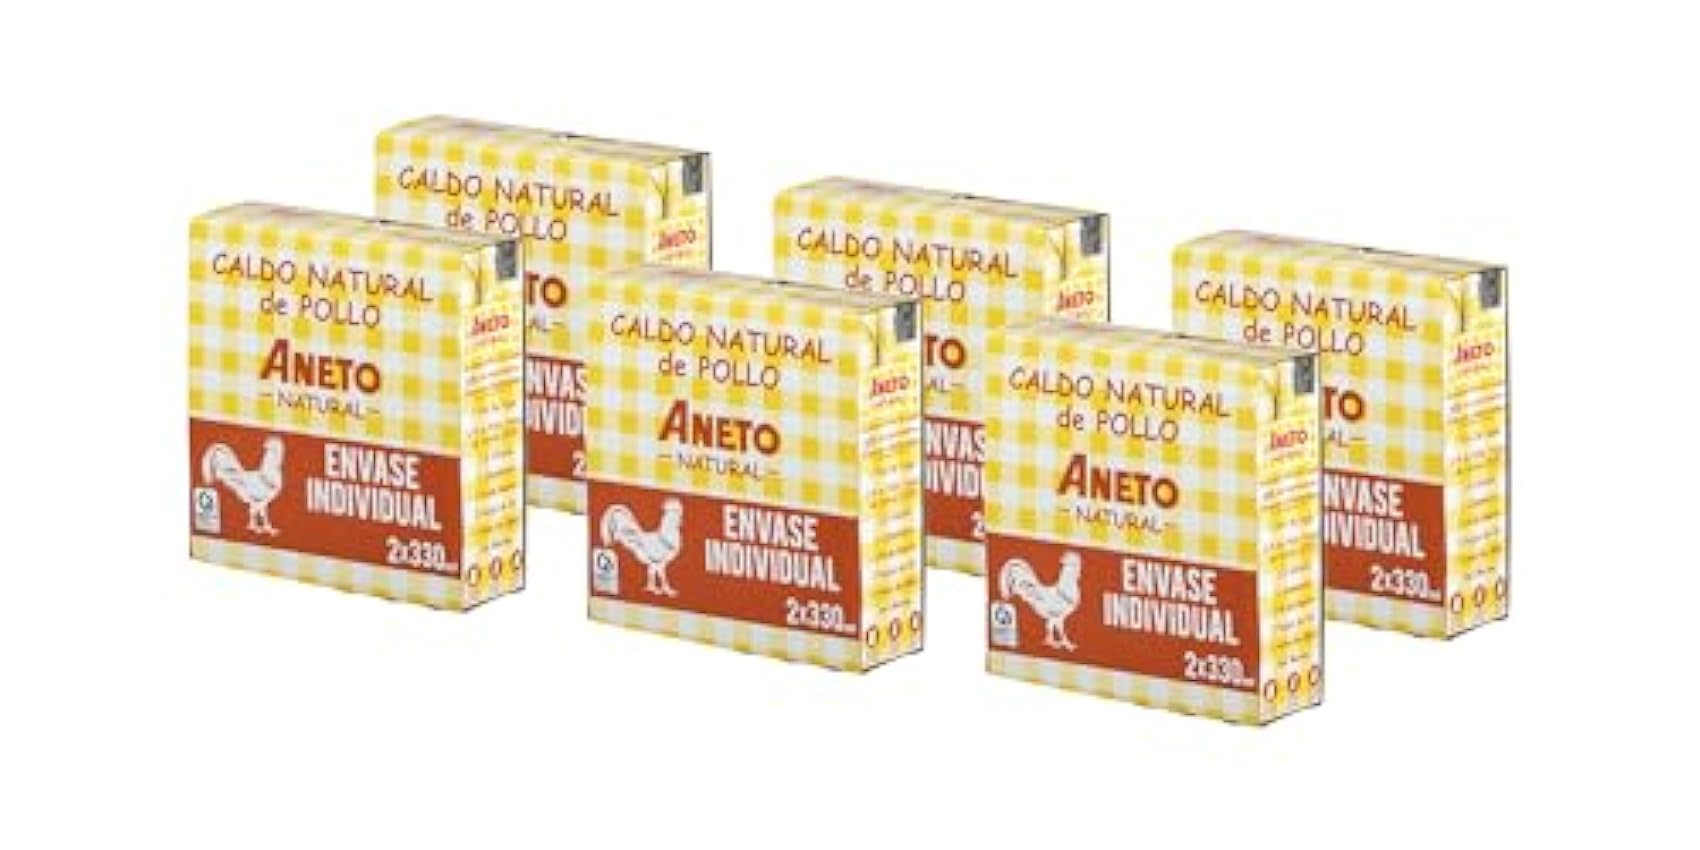 Aneto 100% Natural - Caldo de Pollo - caja de 6 unidades de 2x330ml oXGf8bEn